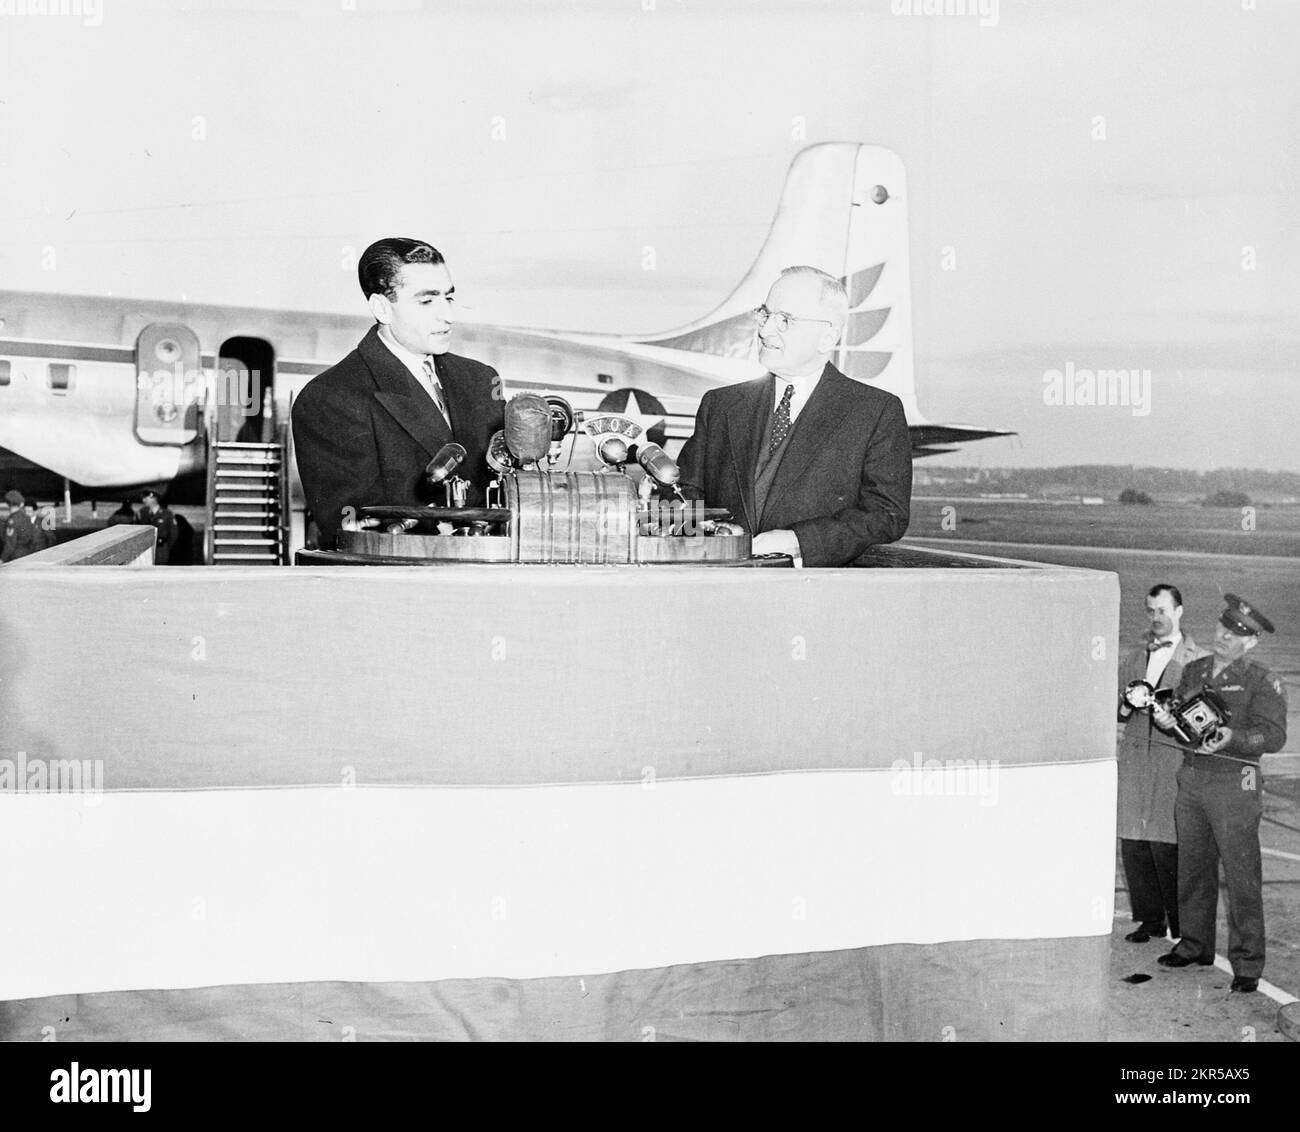 LE président AMÉRICAIN Harry S Truman et Shah d'Iran Mohammad Reza Pahlavi s'exprimait à l'aéroport national de Washington, lors de cérémonies l'accueillant aux États-Unis Banque D'Images